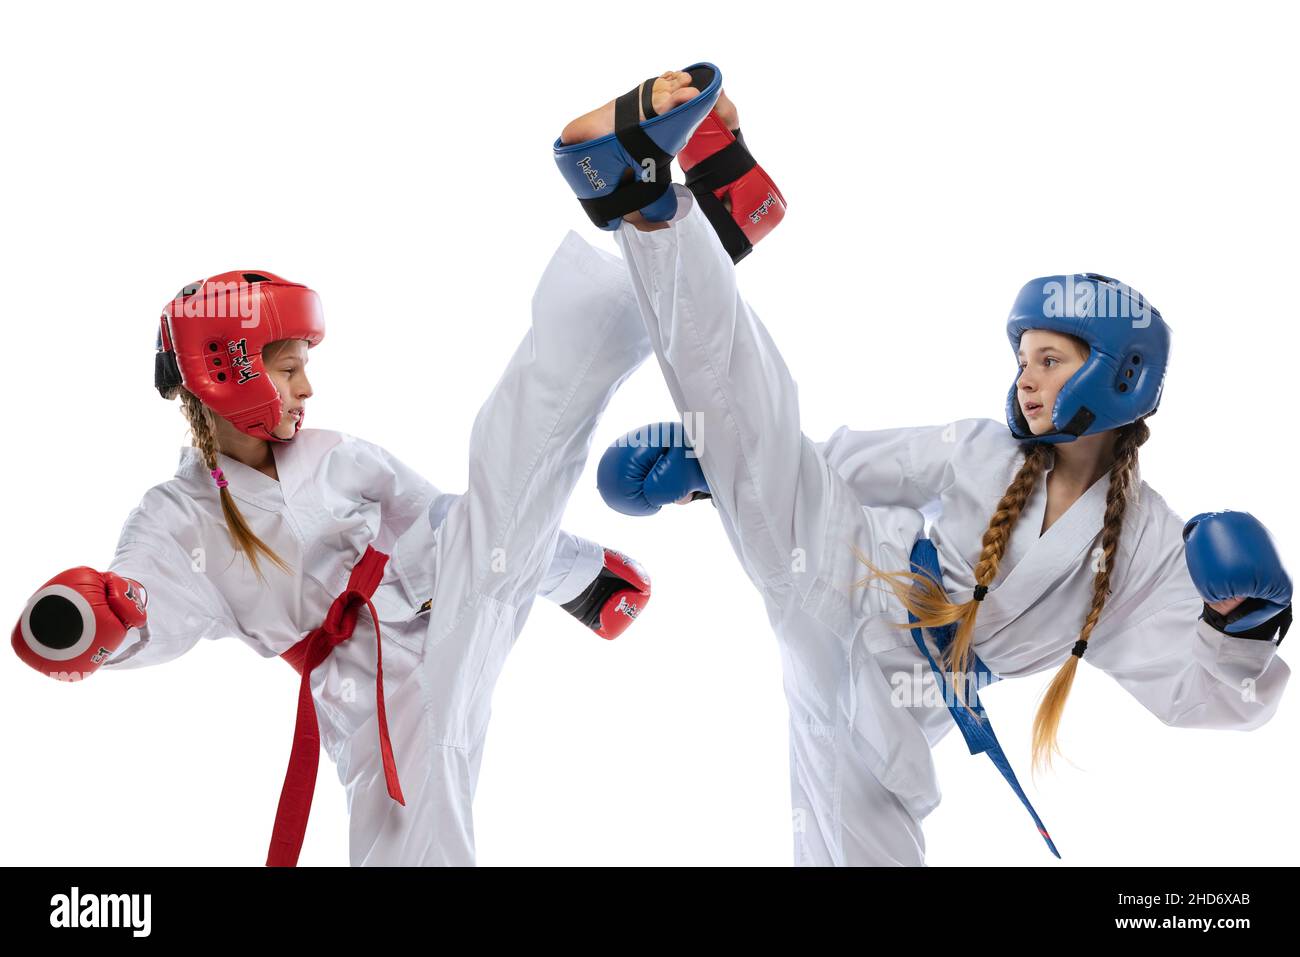 Sportliche junge Mädchen, Teenager, Taekwondo-Athleten trainieren isoliert auf weißem Hintergrund. Konzept von Sport, Bildung, Fähigkeiten Stockfoto